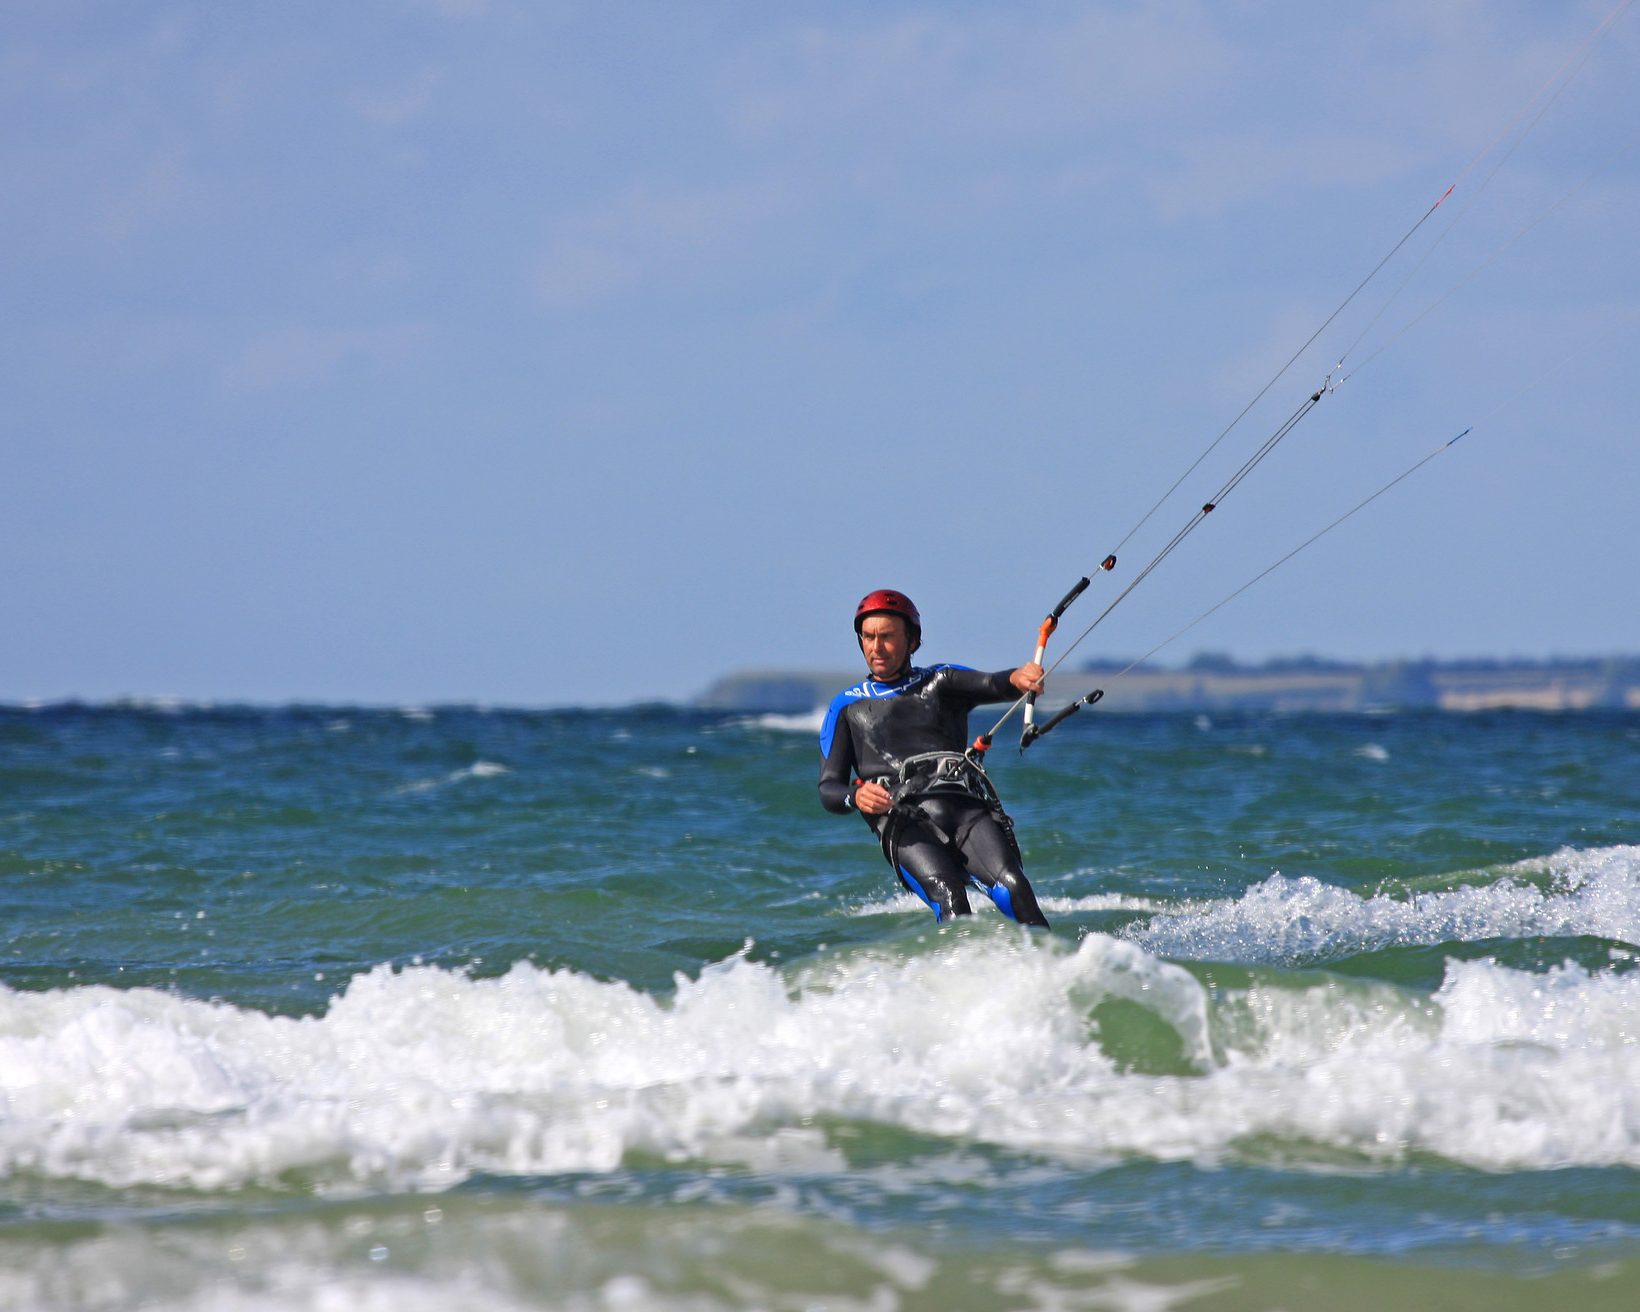 kampioen Sluier corruptie Dit zijn de 10 beste kitespots in de wereld om te leren kitesurfen | momondo